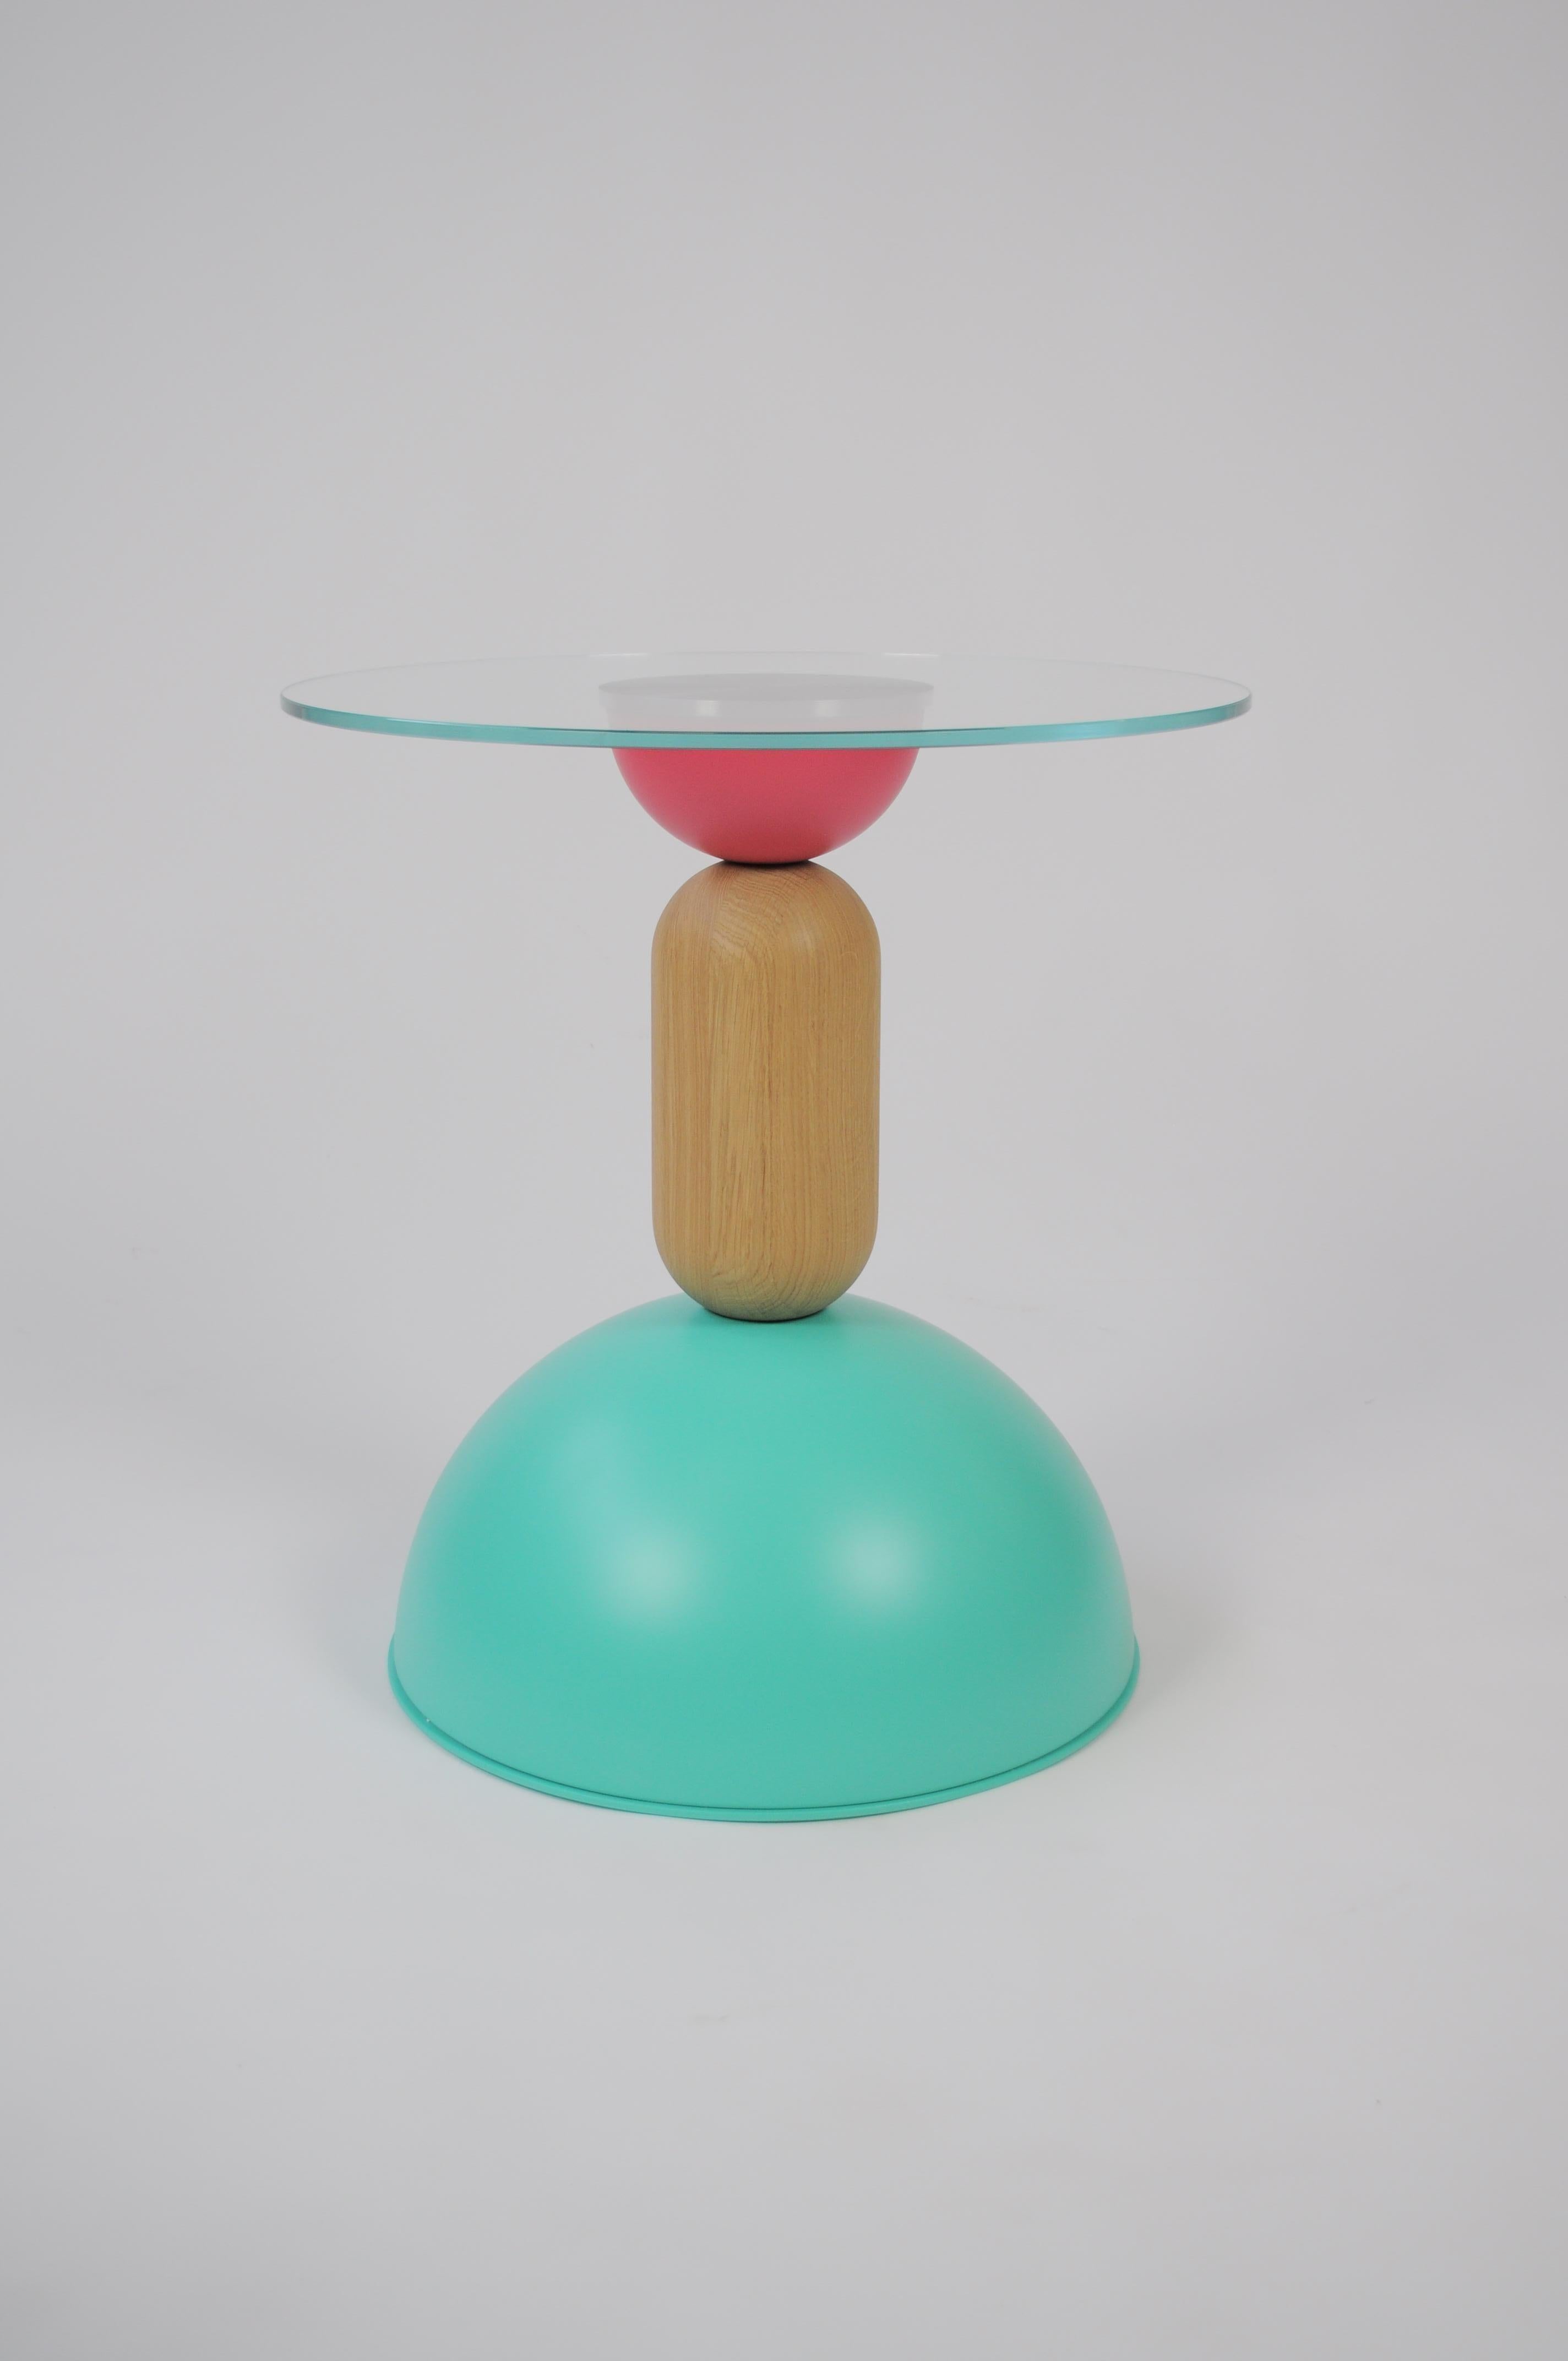 Eine Kollektion von kleinen Tischen in verschiedenen Größen und Höhen, bestehend aus einem vielseitigen
Überlagerung von gebogenen Formen aus Holz und farbigem Metall. Wie Tanzen
Figuren, die gleichzeitig spielerisch und funktional sind und die